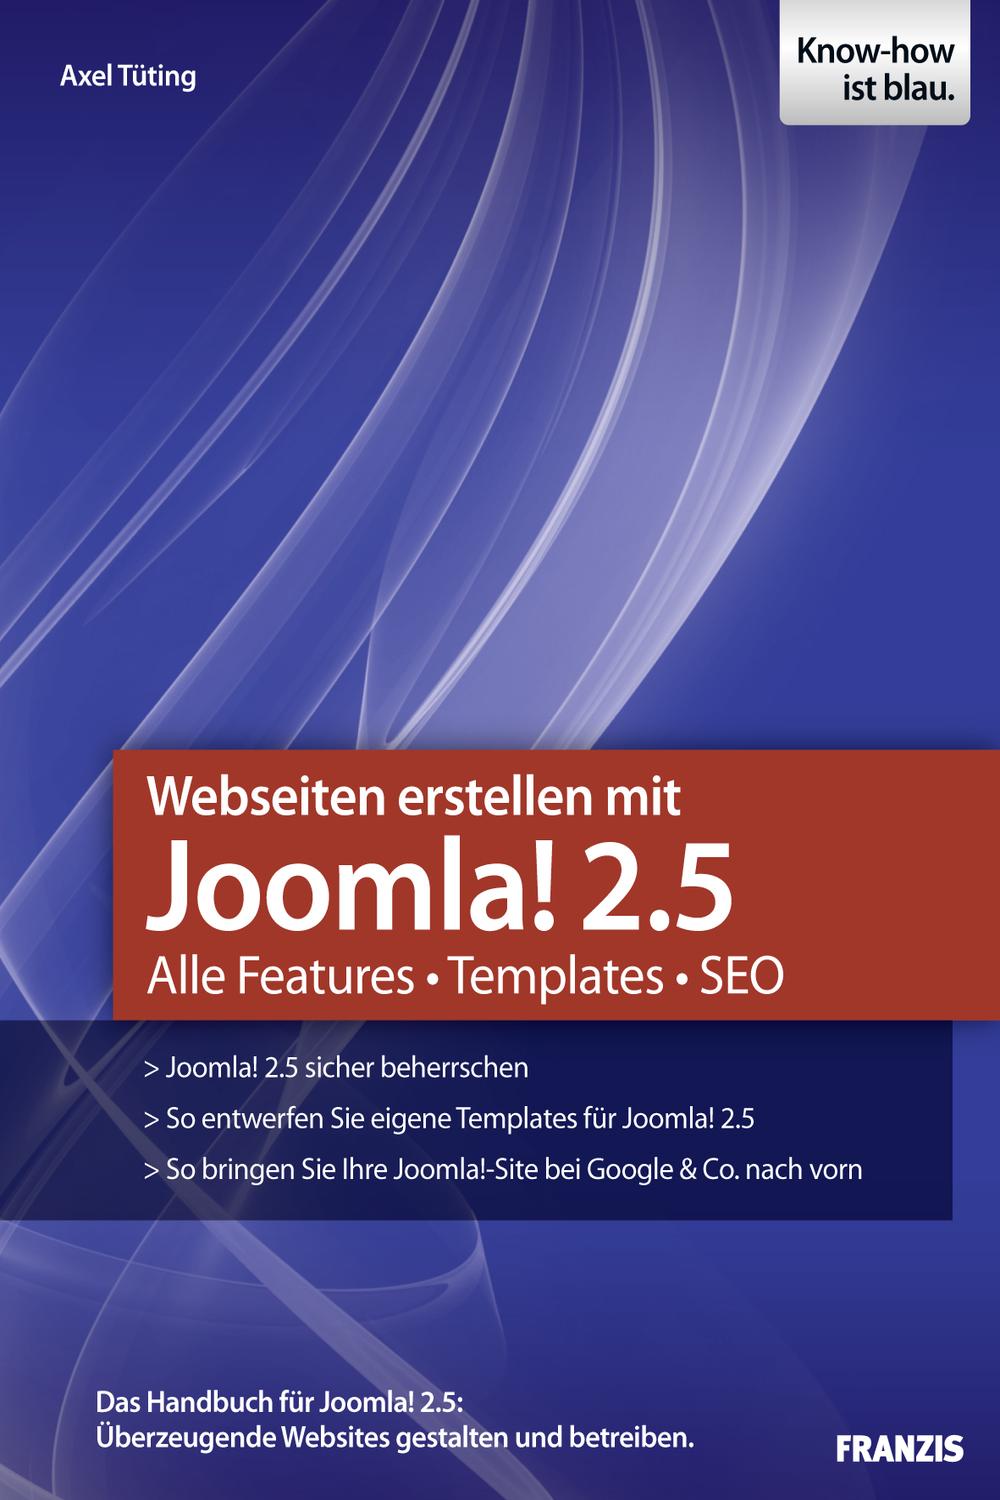 Webseiten erstellen mit Joomla! 2.5 - Axel Tüting